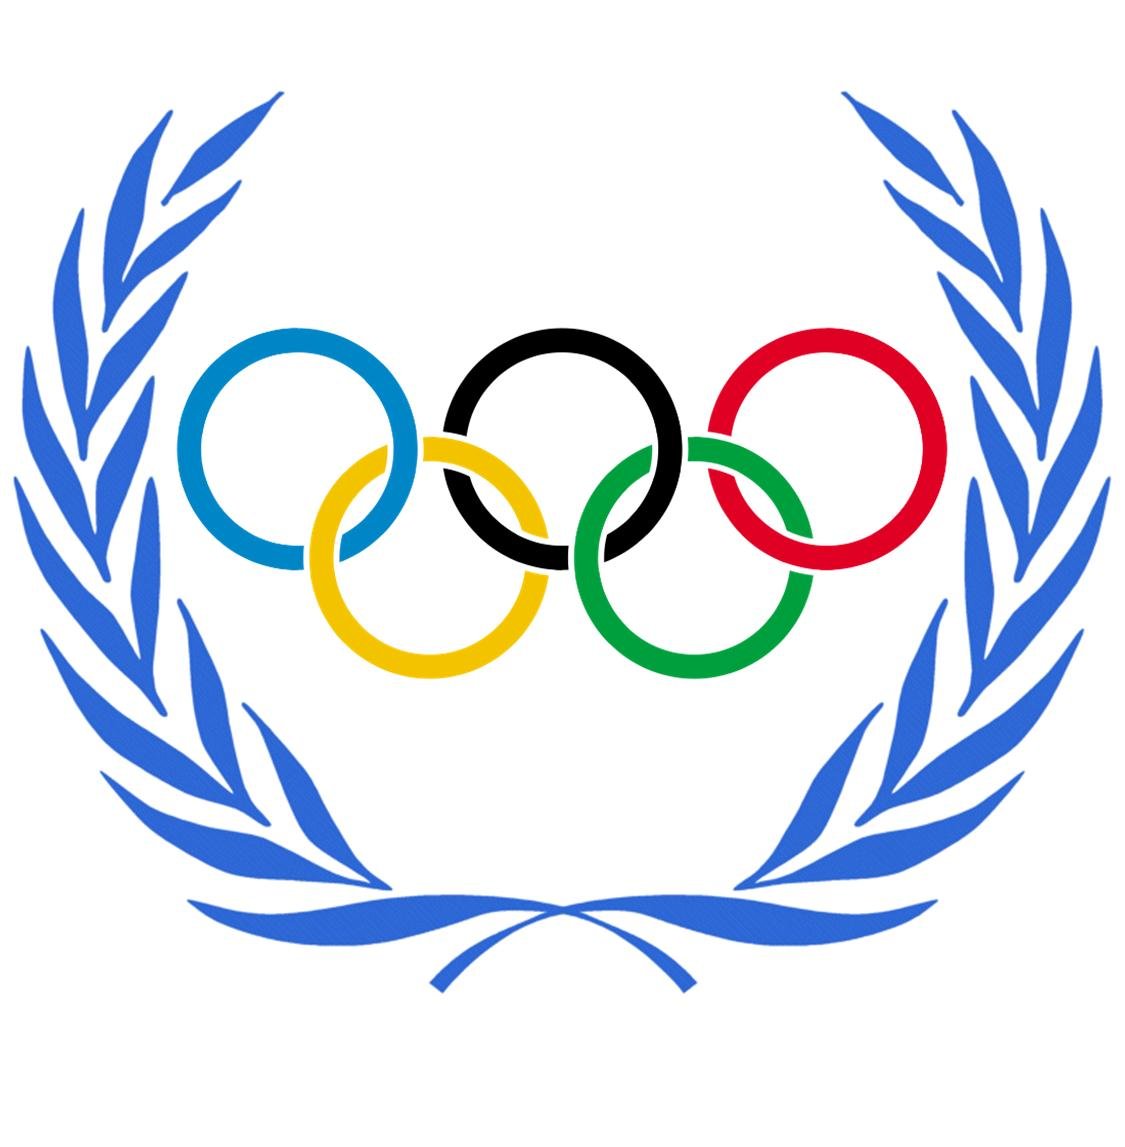 Олимпийские кольца рисунок